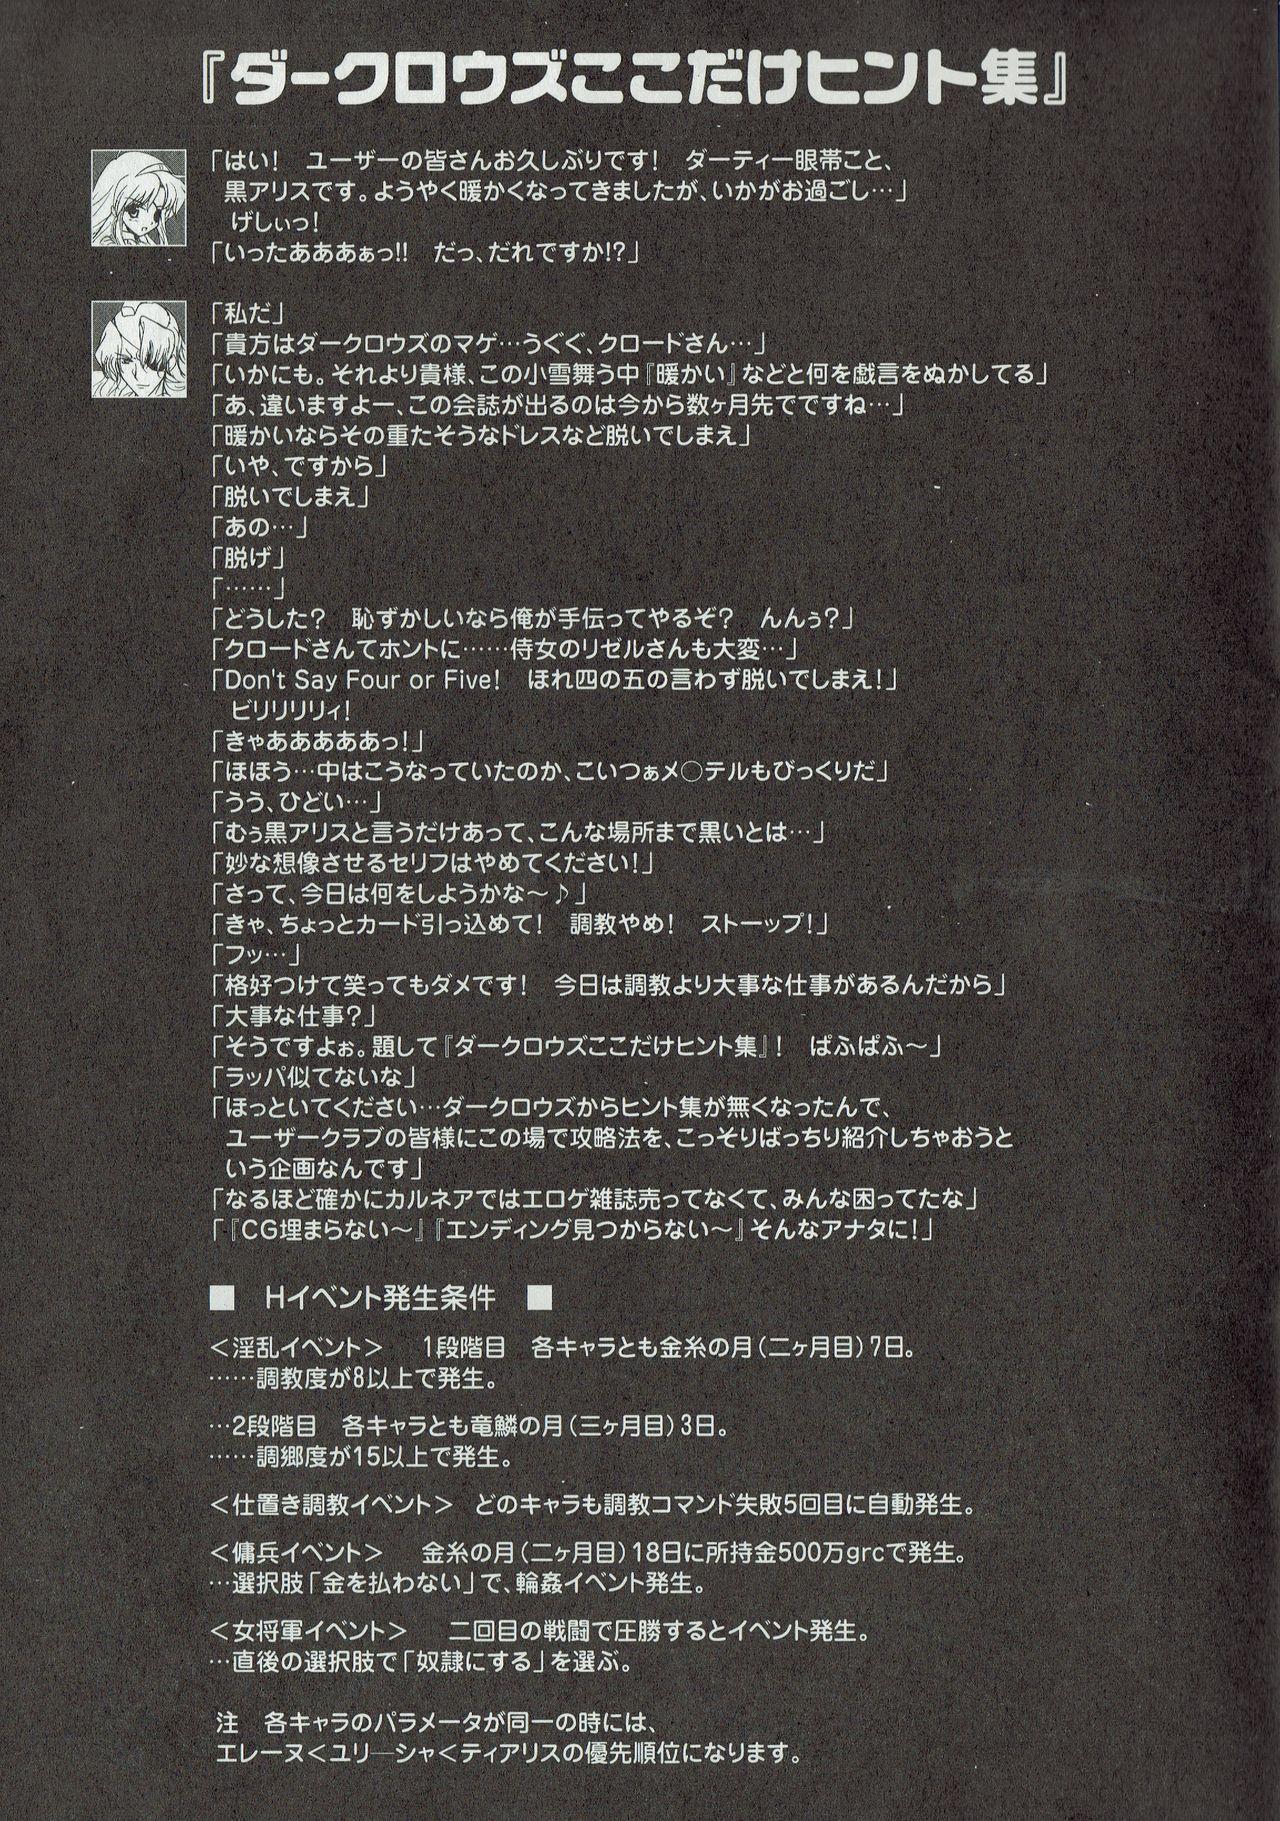 Arisu no Denchi Bakudan Vol. 10 5